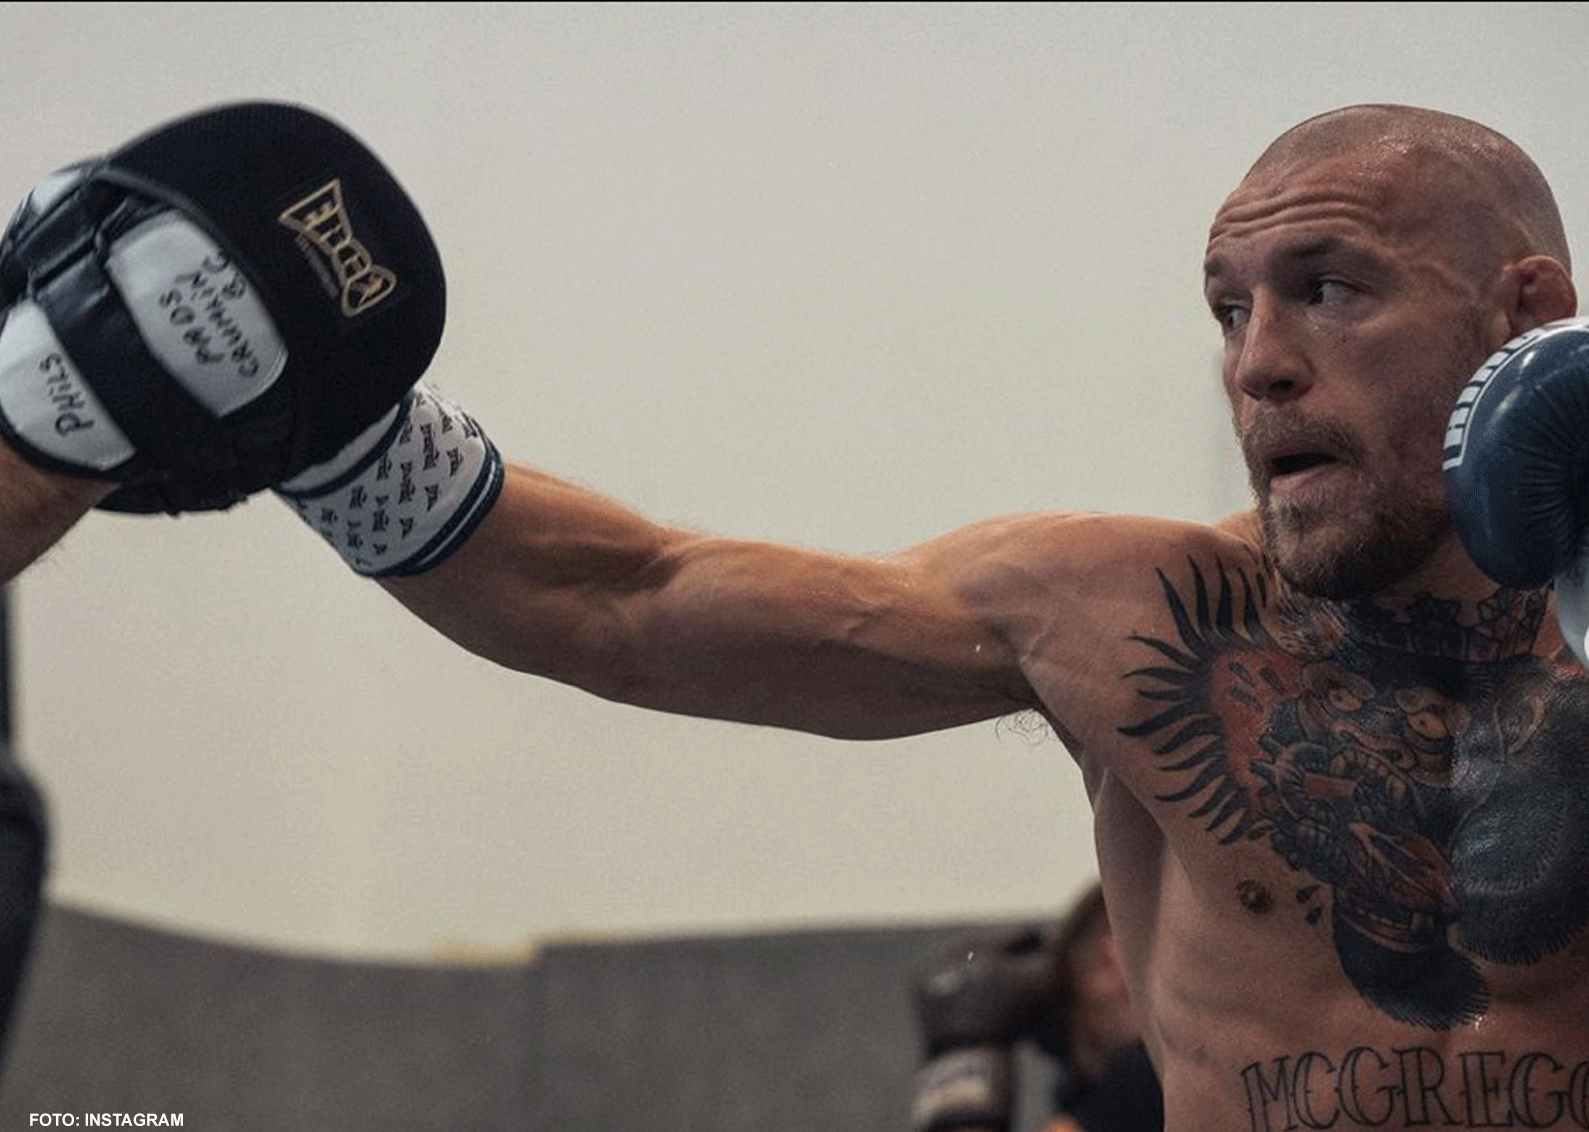 UFC-ster Conor McGregor geeft advies aan bokskampioene: 'Zo moet het goed komen'